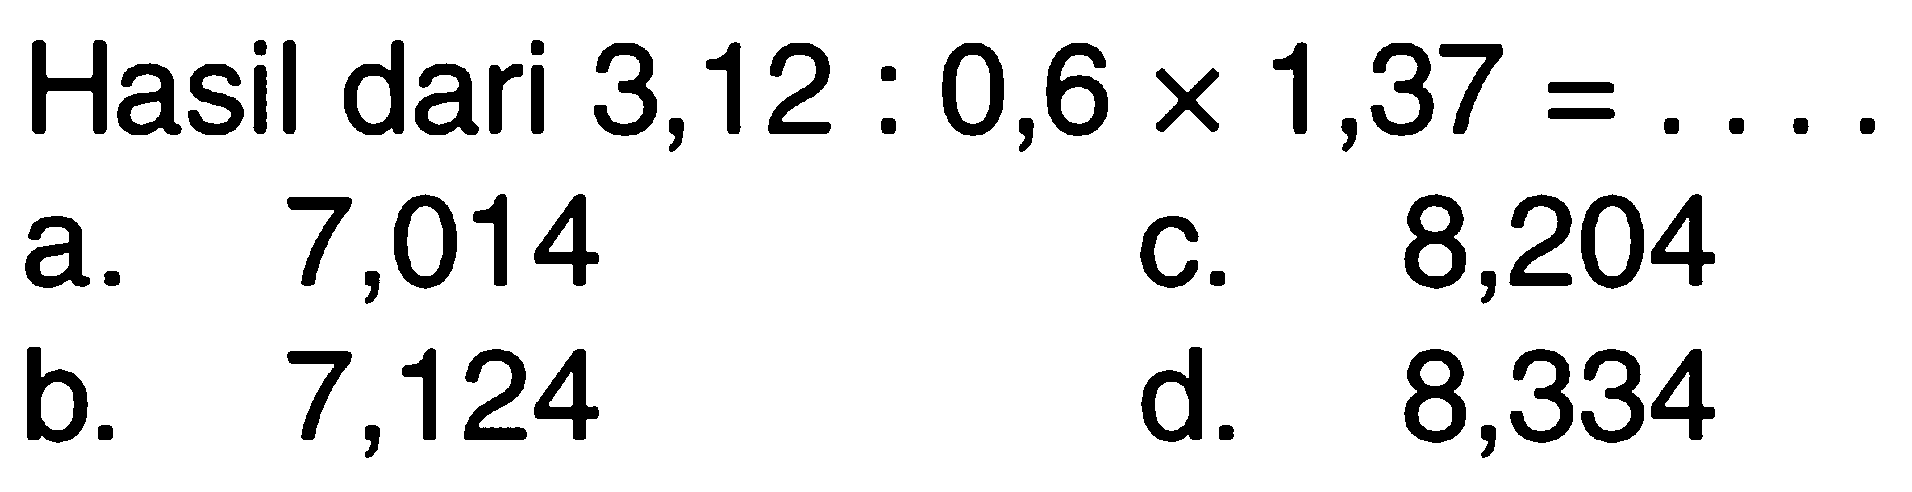 Hasil dari 3,12 : 0,6 x 1,37 =